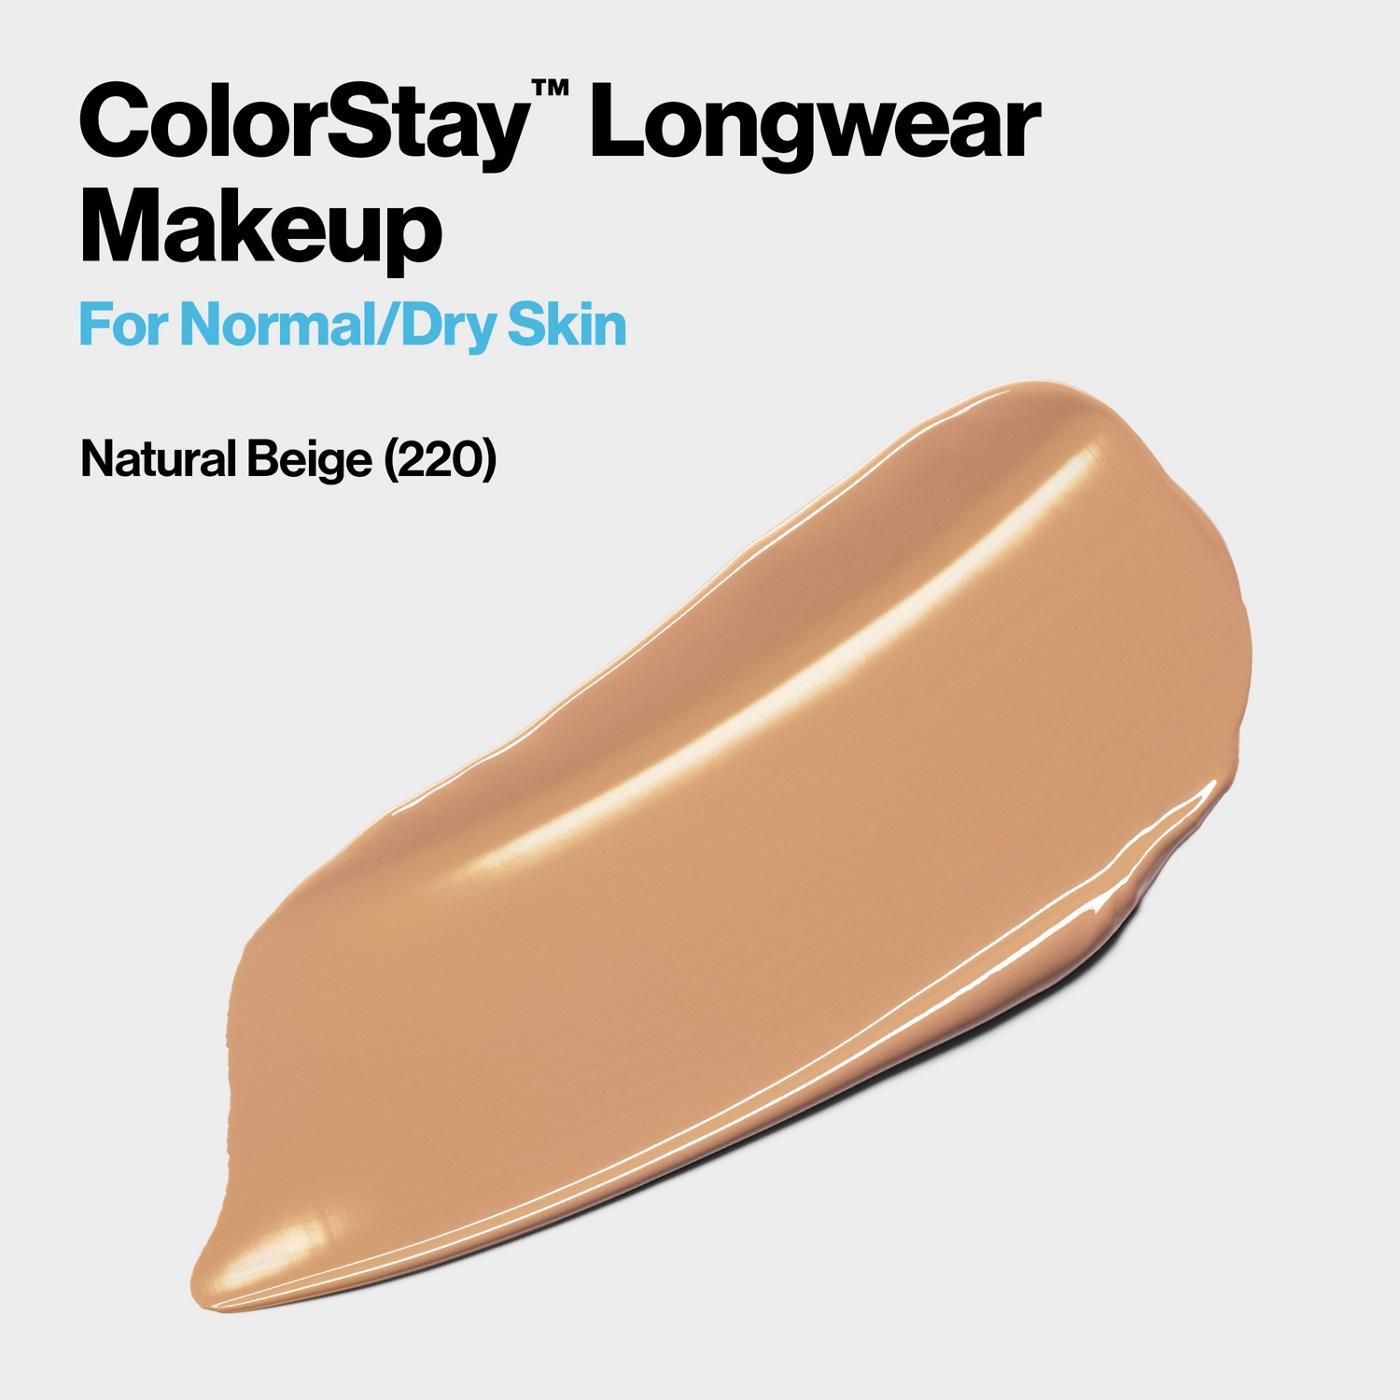 Revlon ColorStay Makeup for Normal/Dry Skin, 220 Natural Beige; image 6 of 6